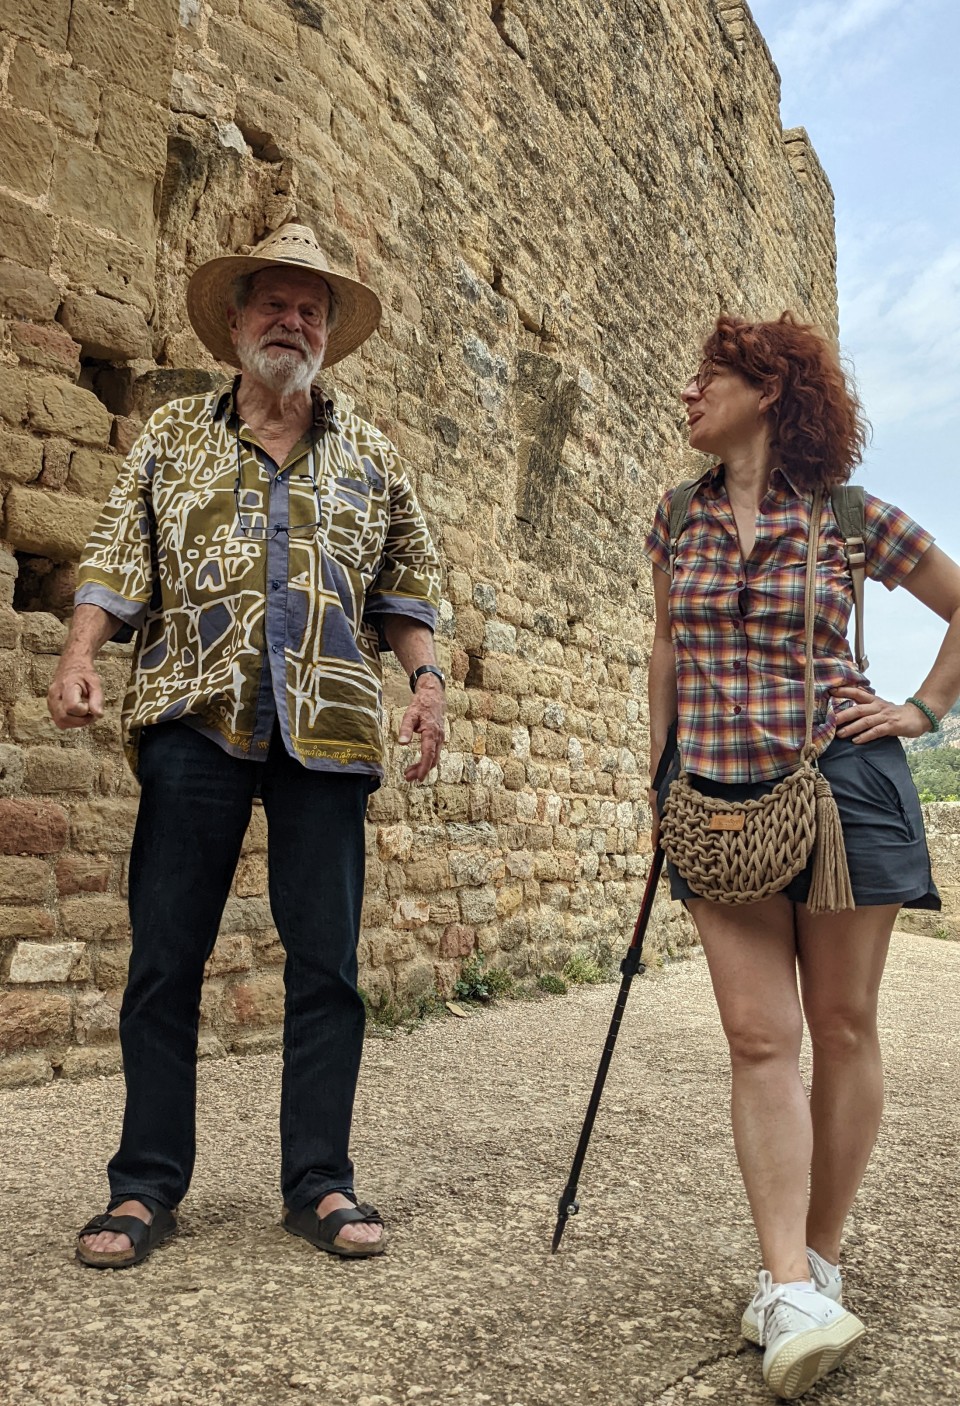 Imagen Terry Gilliam visita distintas localizaciones de la provincia de Huesca